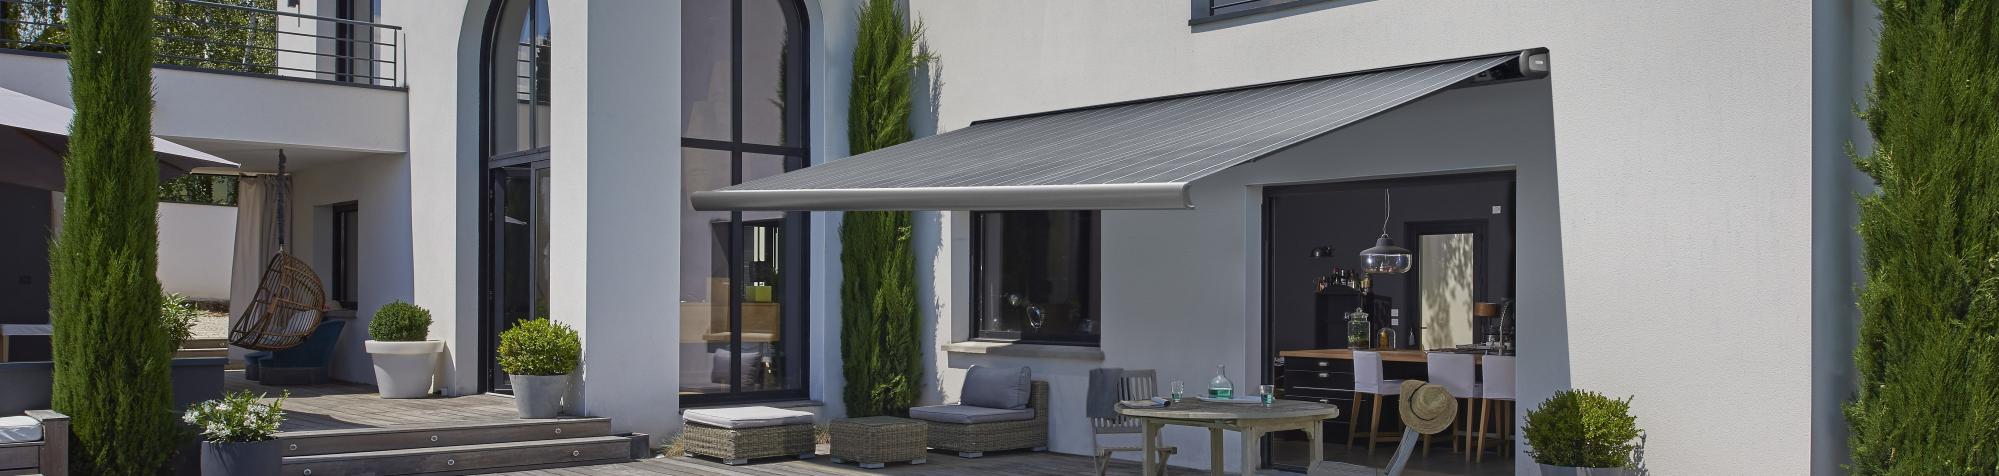 Créez l'ambiance parfaite avec nos stores bannes à configurer pour terrasses et balcons. Alliant style et fonctionnalité, le store banne extérieur offre une protection solaire idéale.